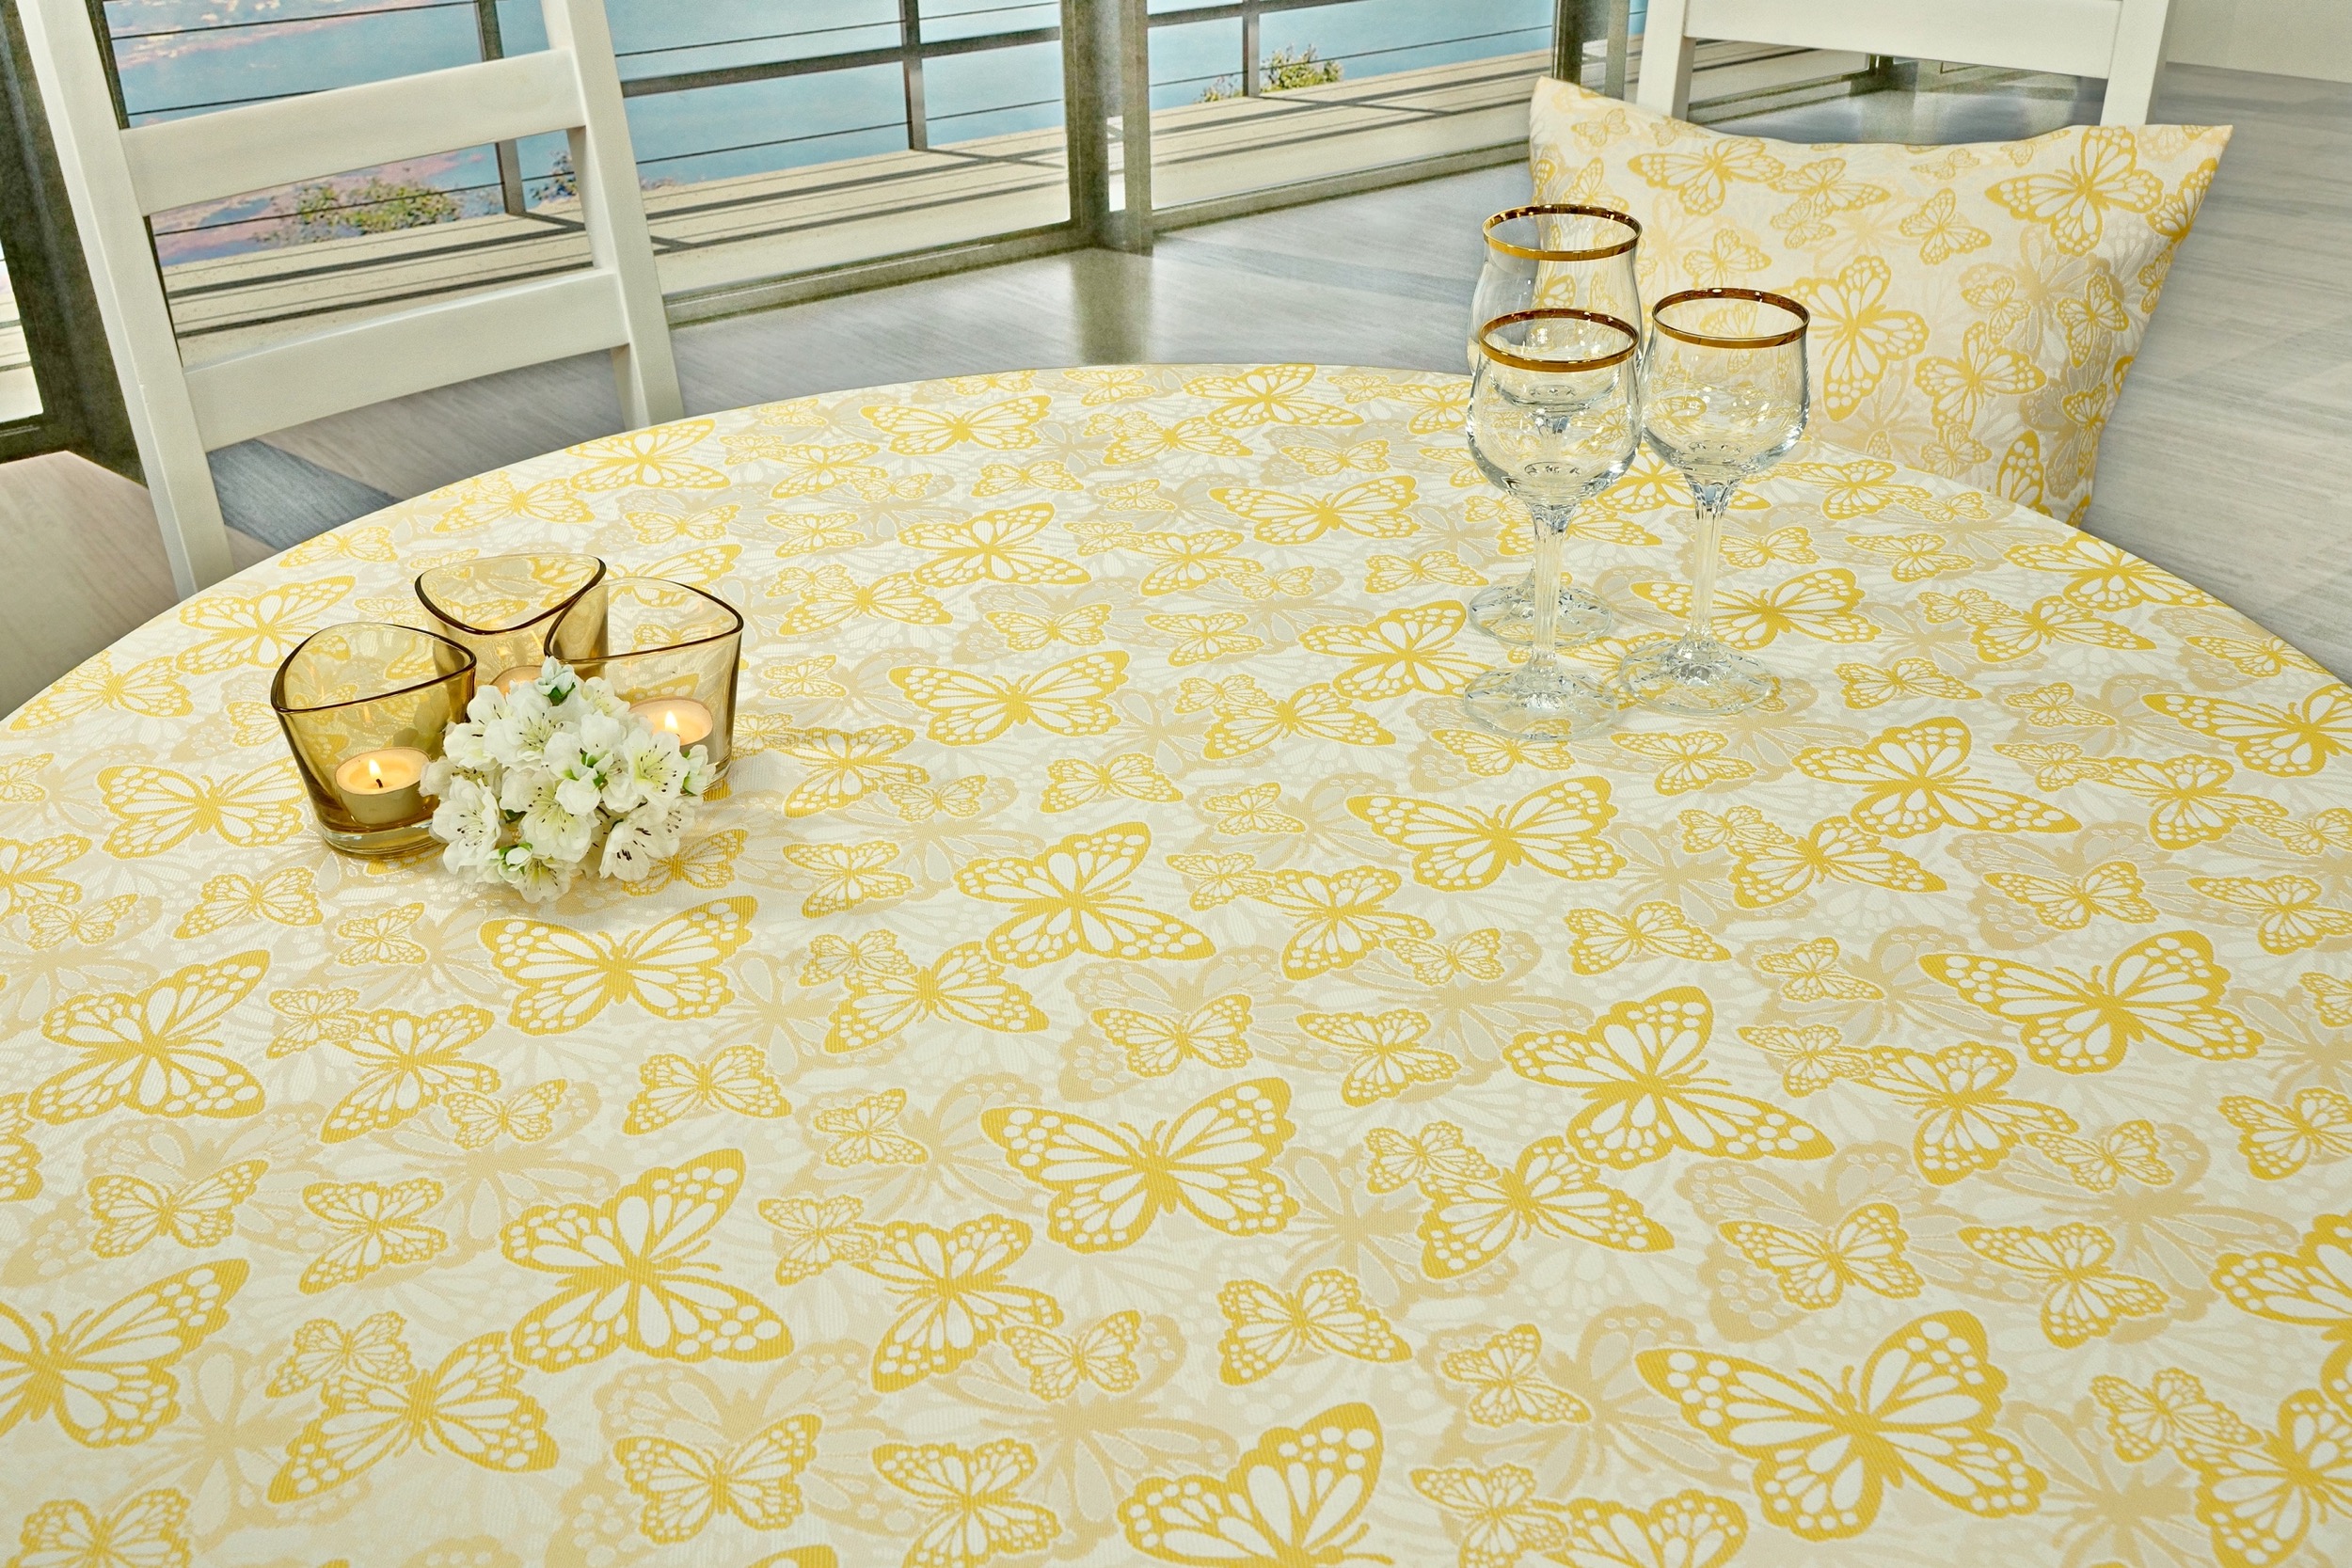 Fleckgeschützte Tischdecke Weiß Gelb Muster Springtime Breite 110 cm OVAL